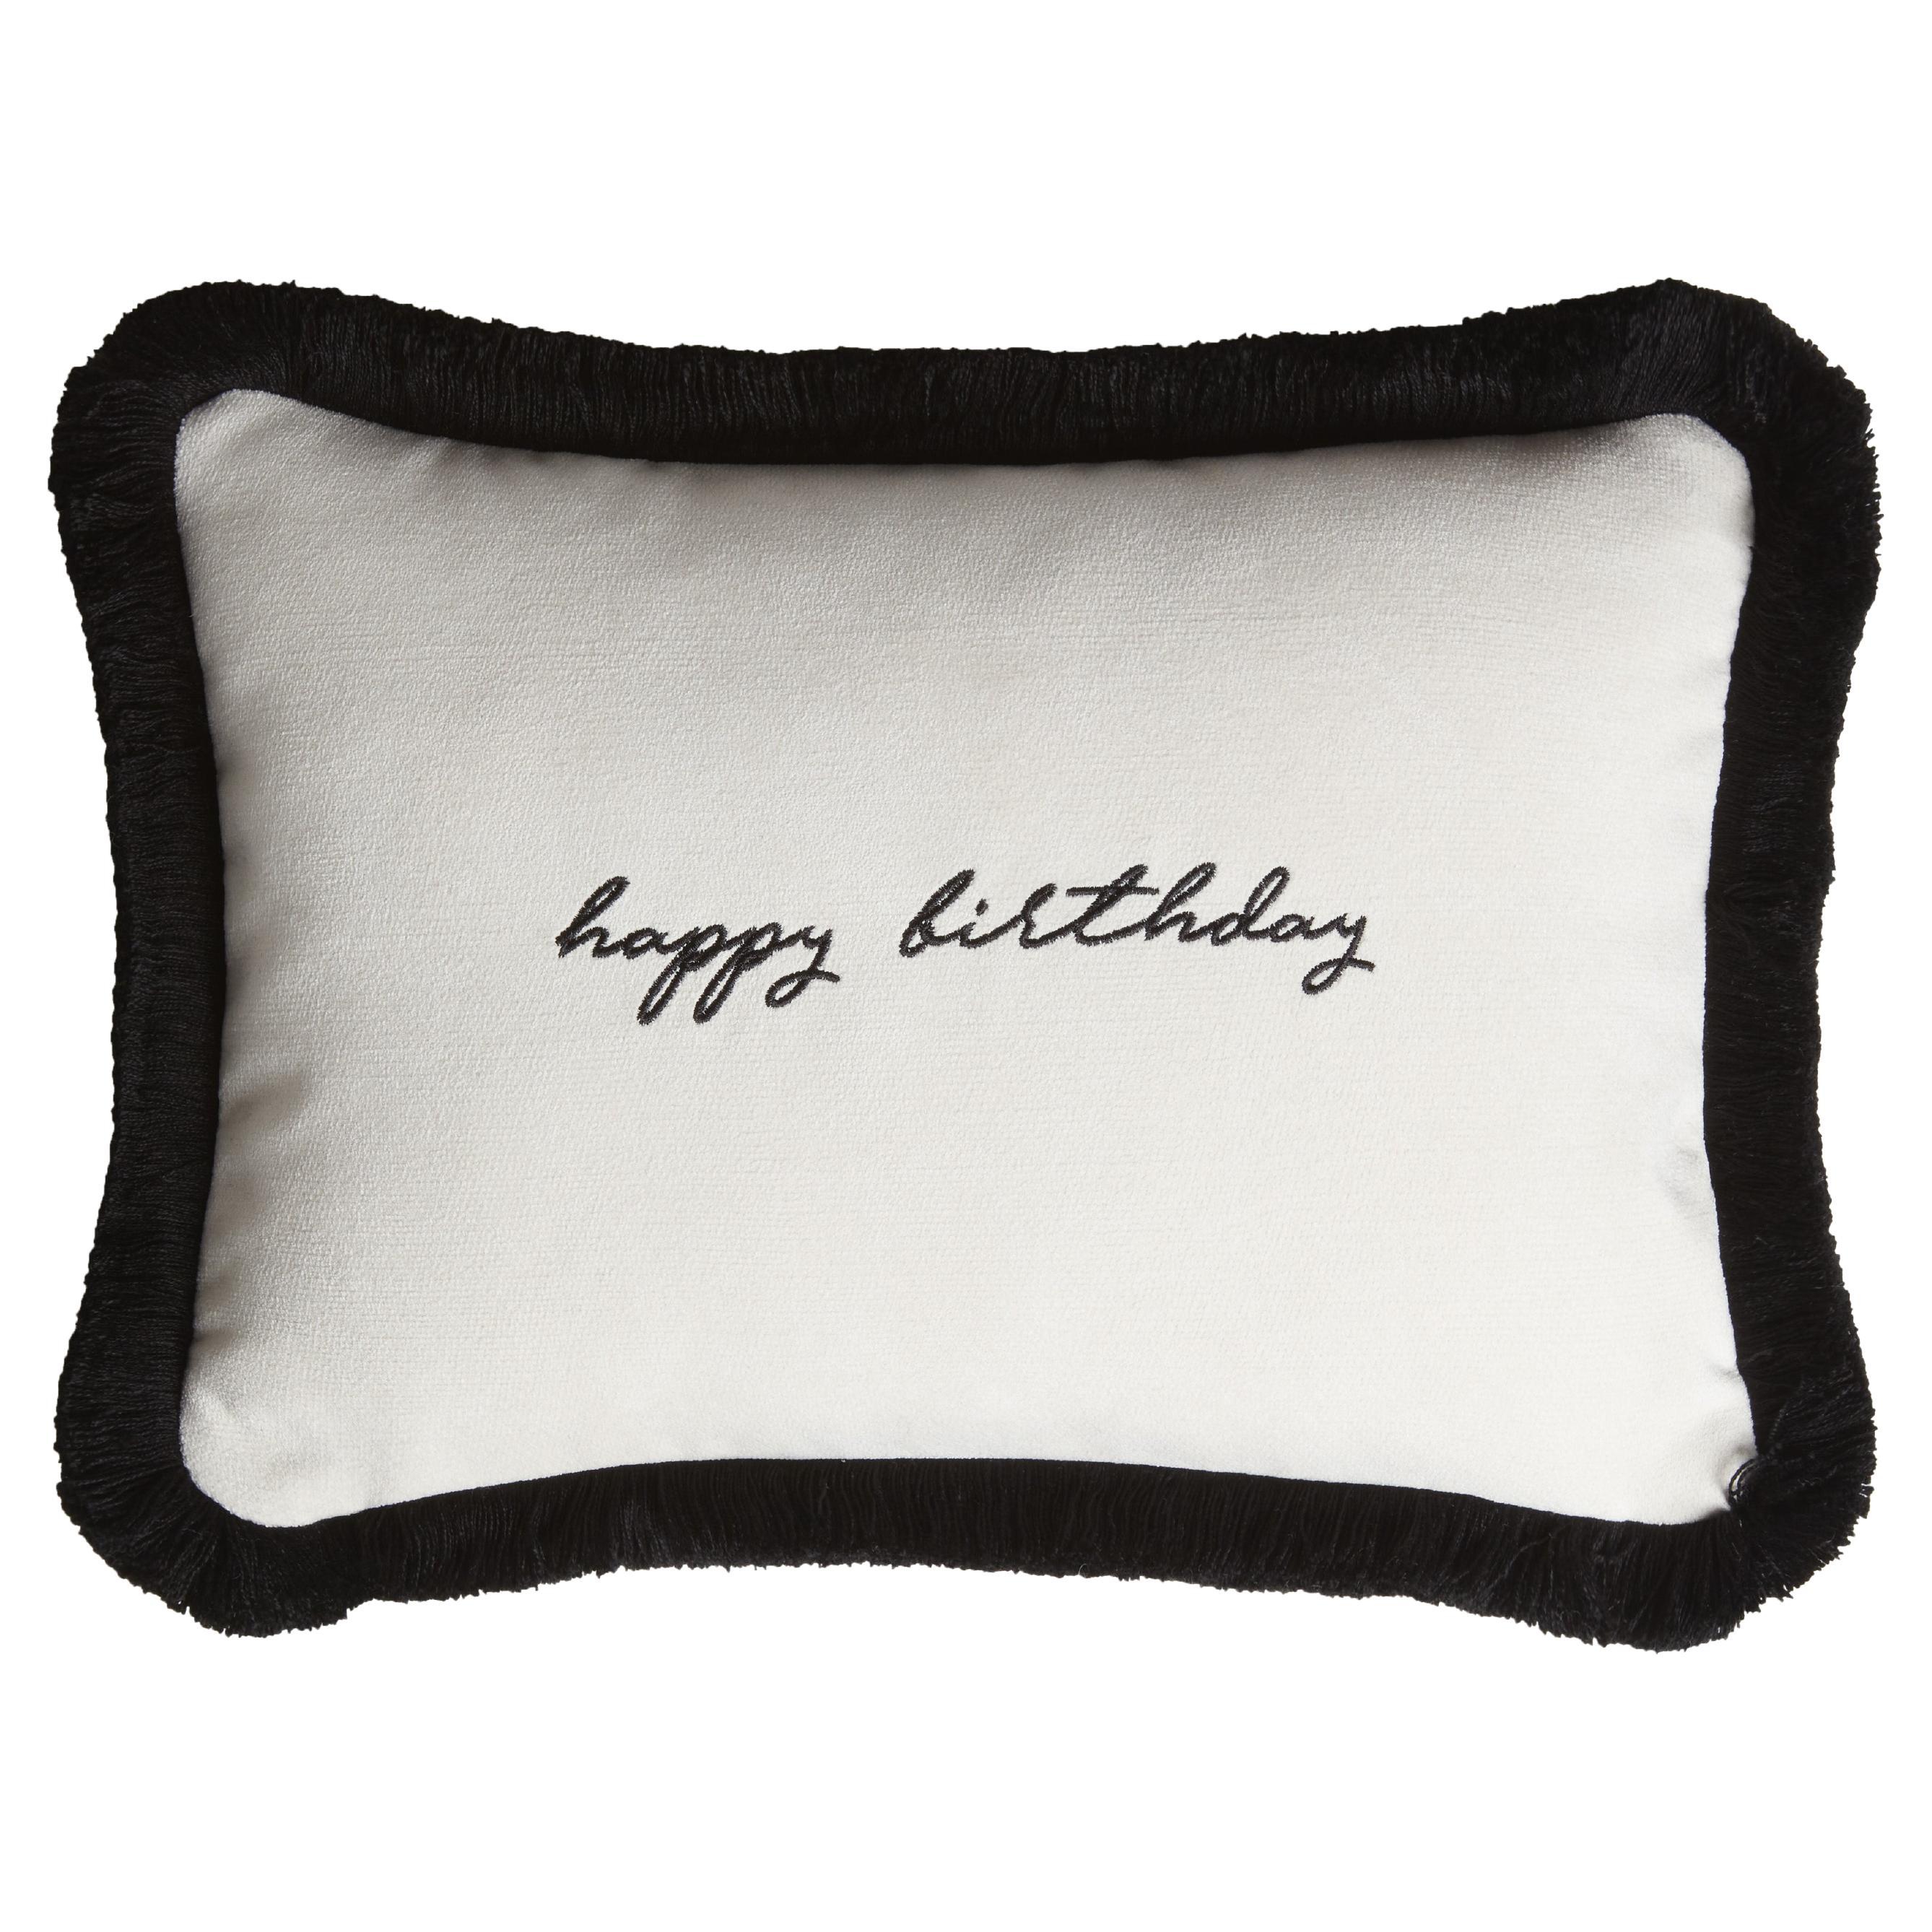 Happy Birthday Cushion White Velvet with Black Fringes For Sale